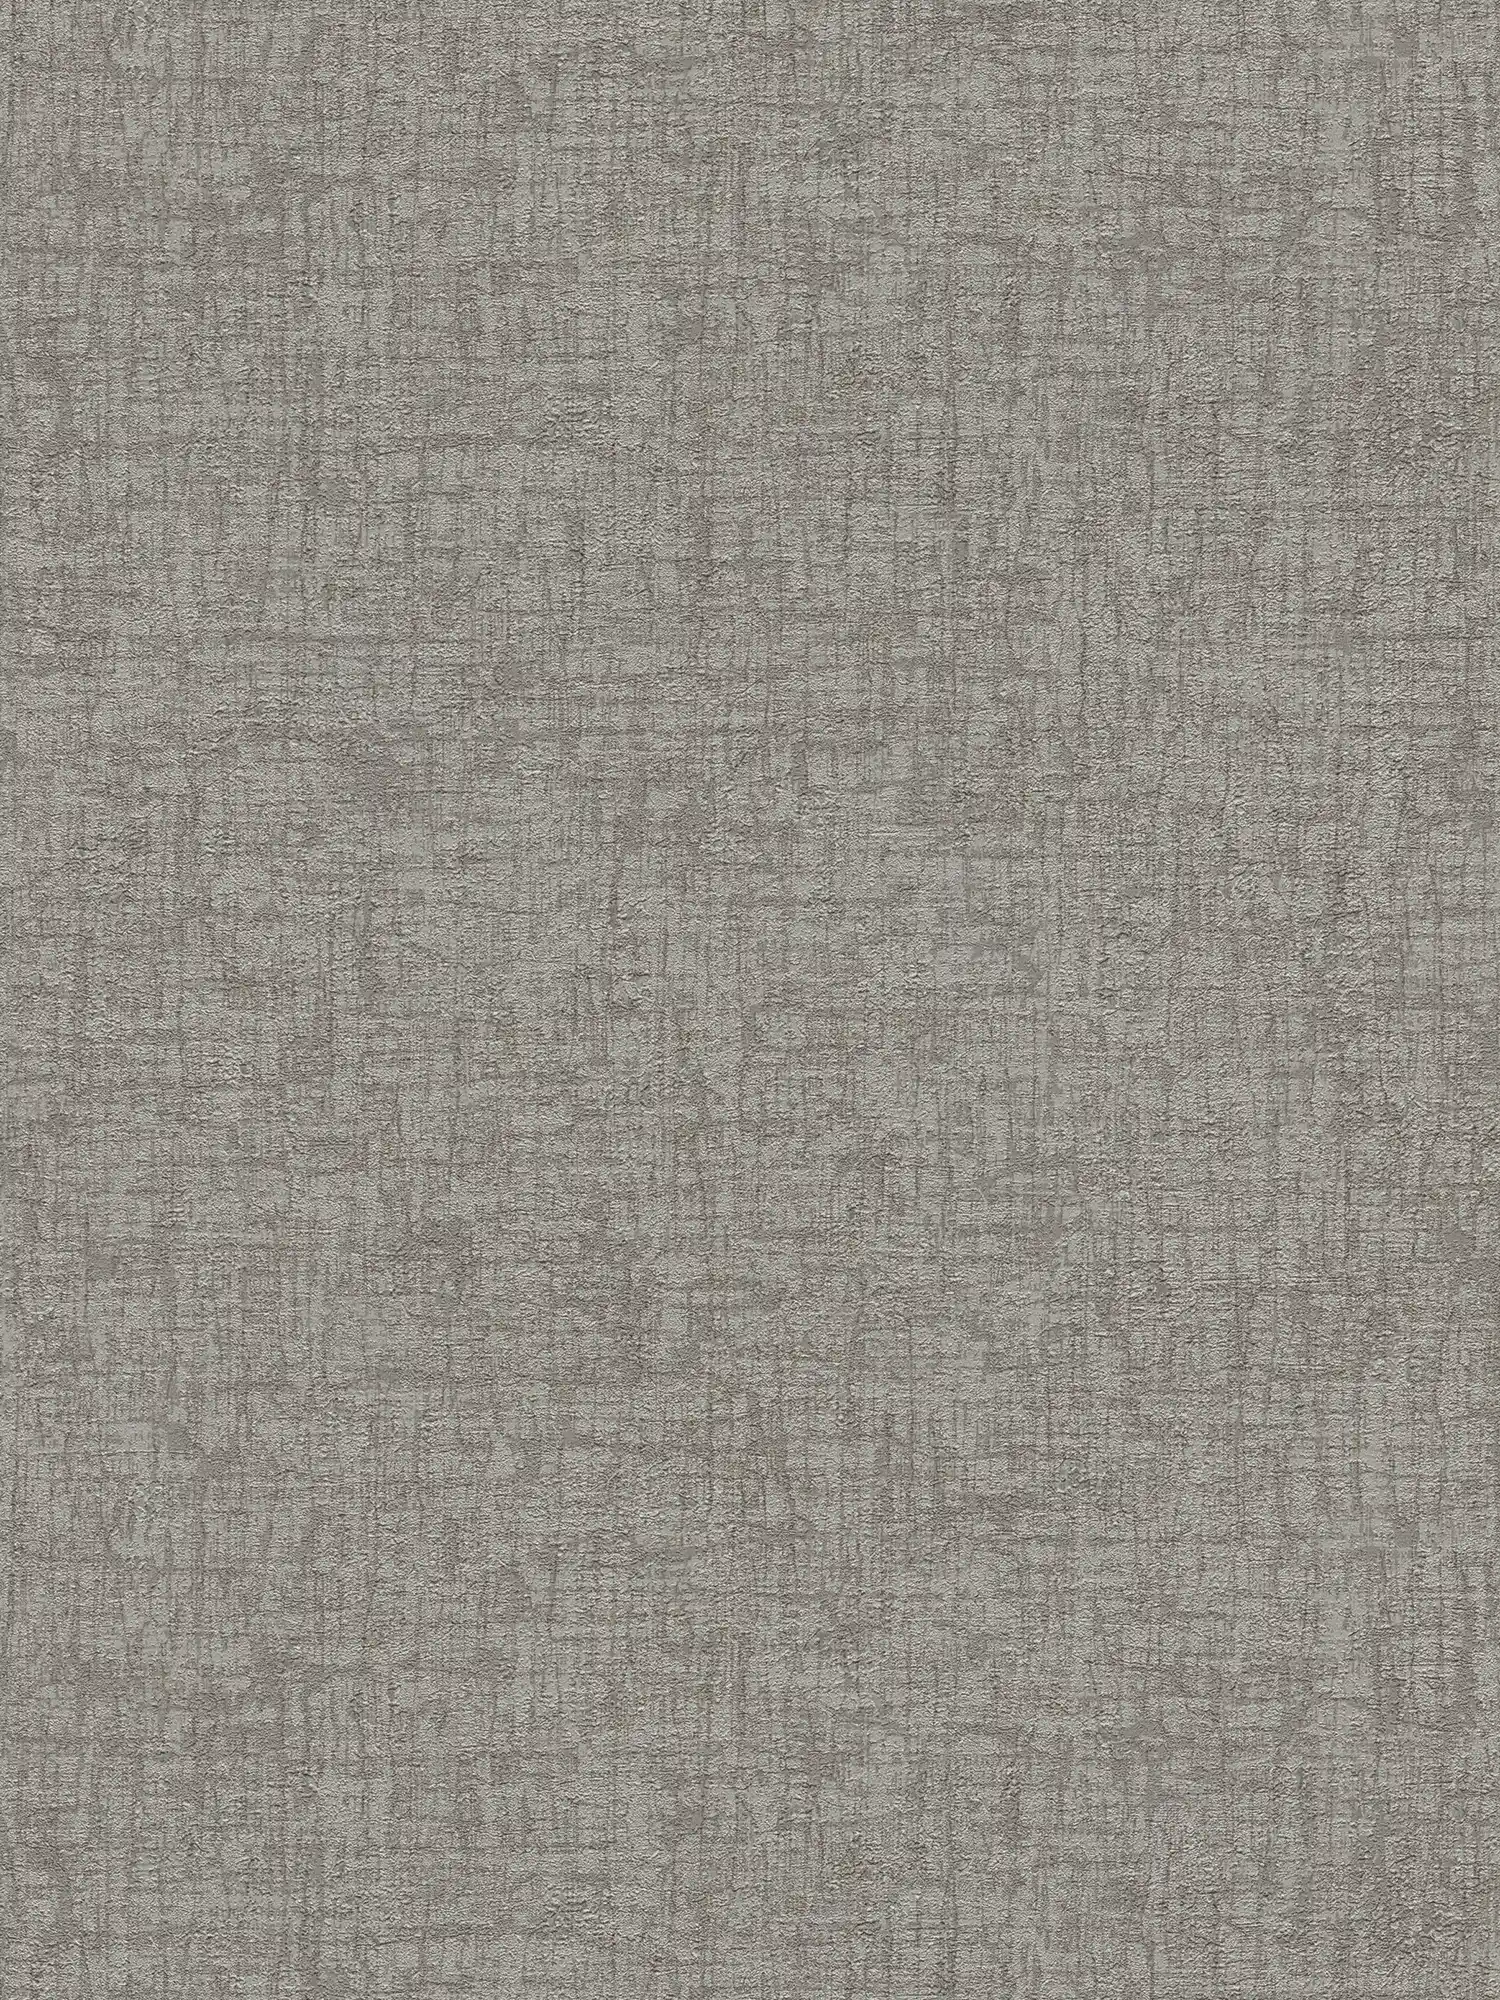 Vliesbehang met textuur in textiellook - grijs, donkergrijs
